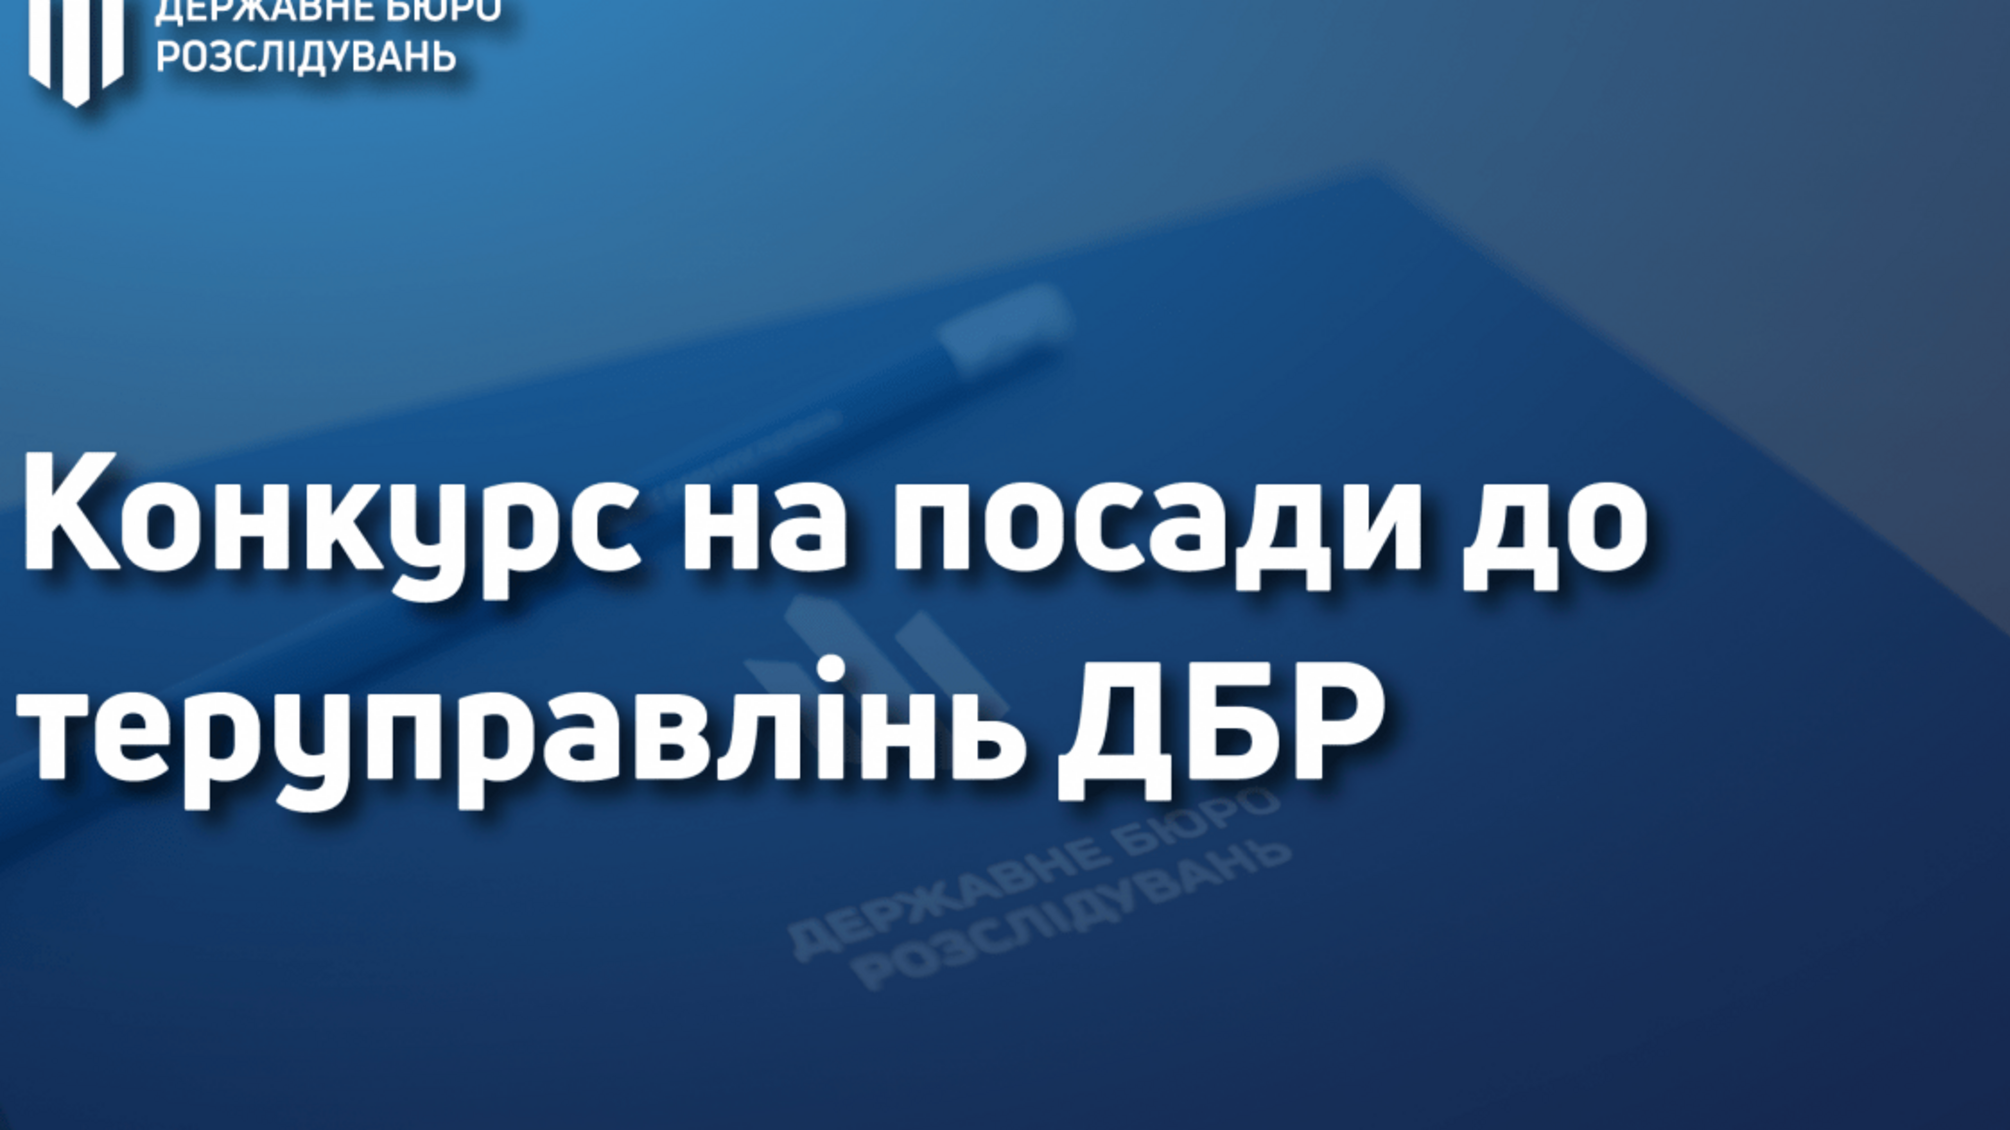 Оголошення про проведення конкурсу  в Територіальному управлінні Державного бюро розслідувань, розташованому у місті Миколаєві